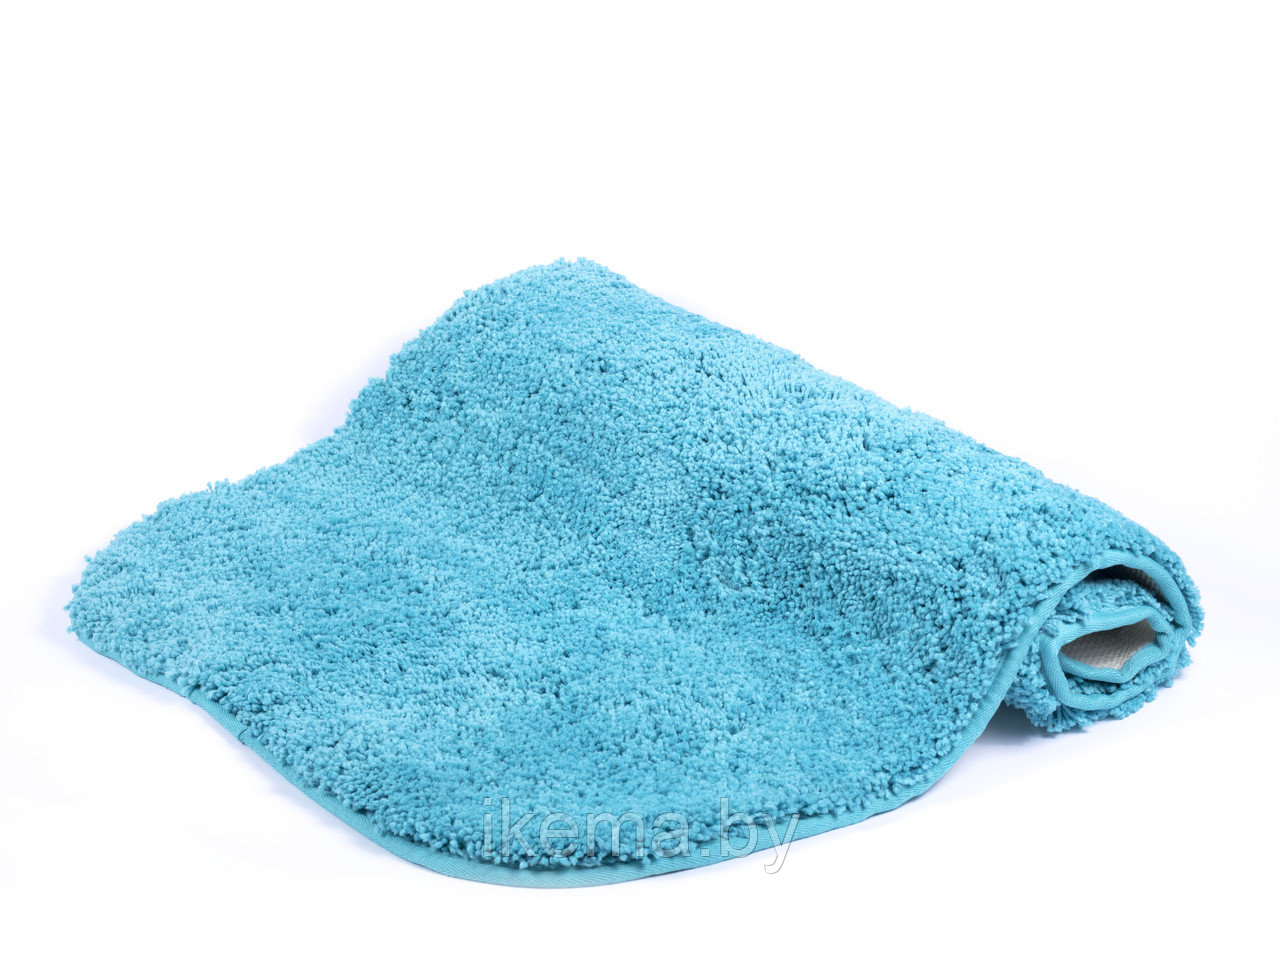 КОВРИК ДЛЯ ВАННОЙ текстильный голубой “Wellness” 55*85 см (арт. 7049315, код 091884)